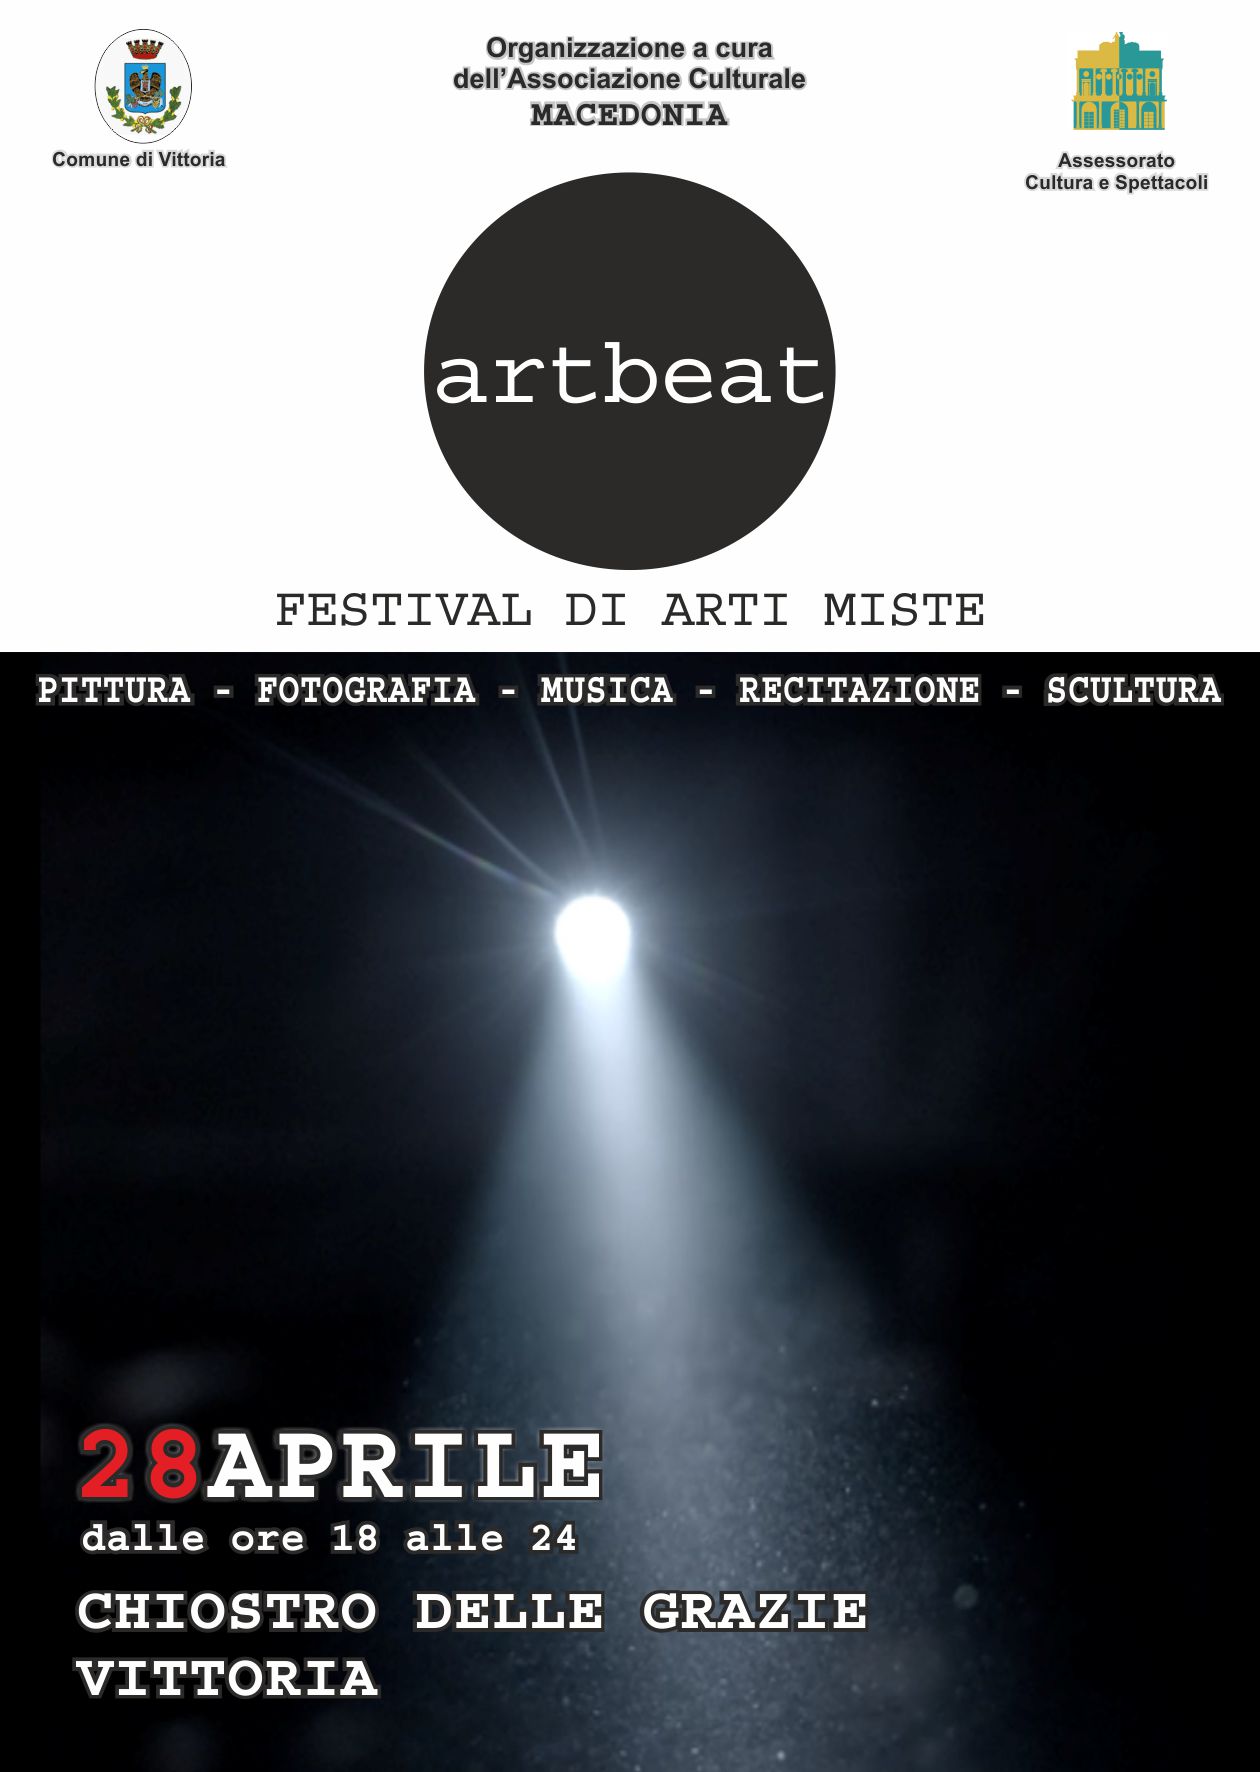 28 aprile. Artbeat: festival delle arti moderne